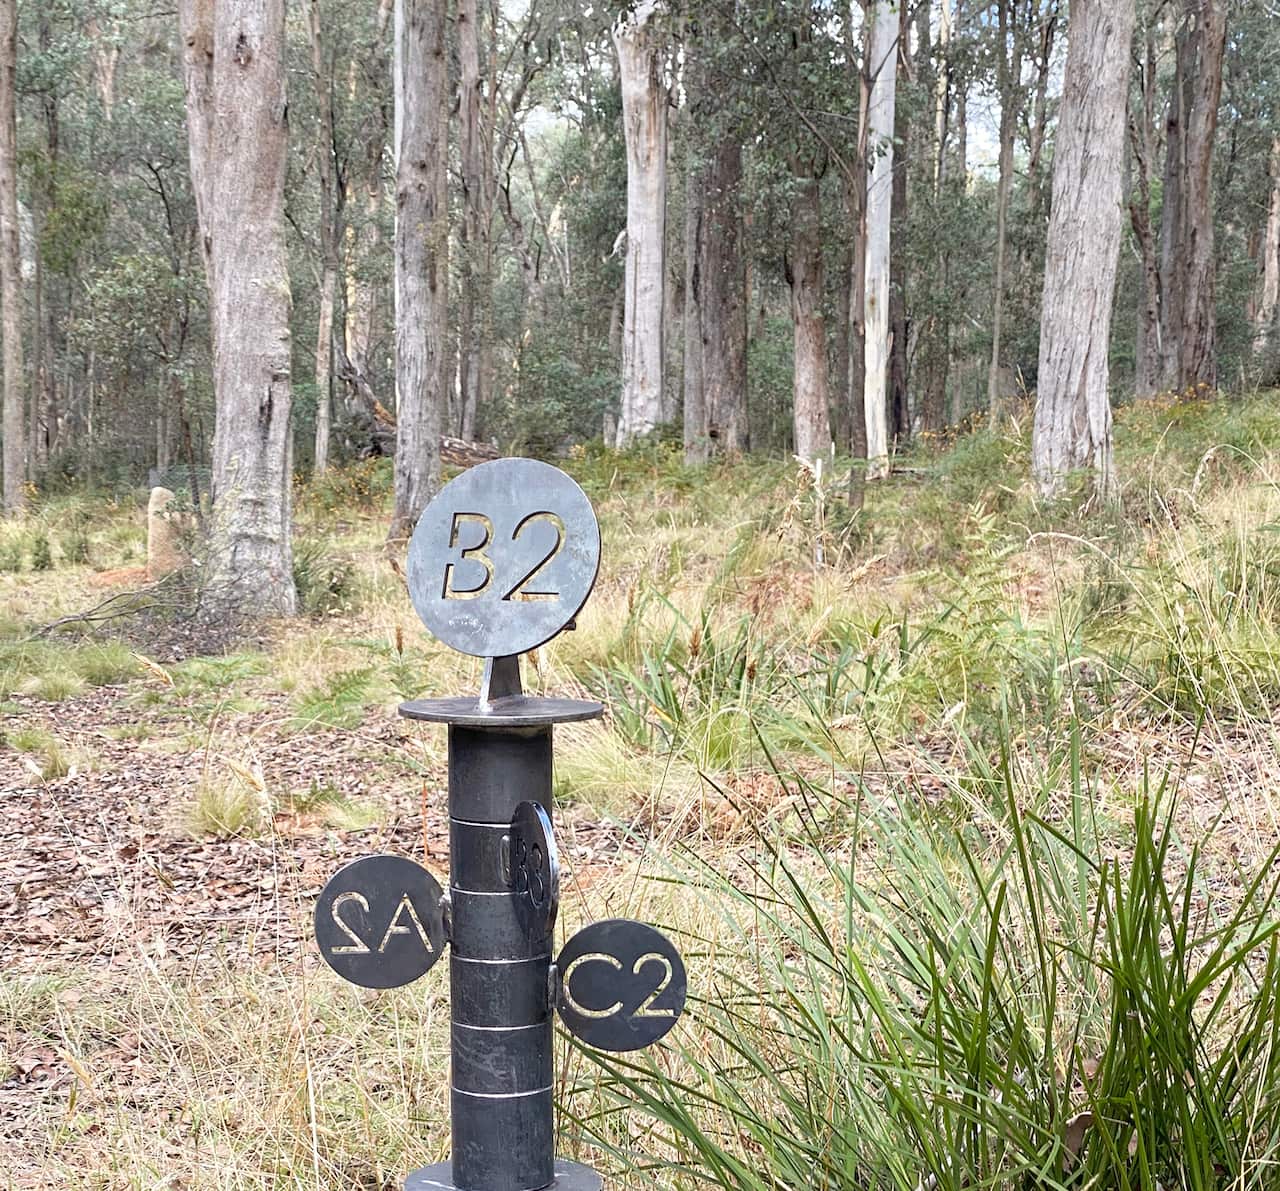 澳大利亚丛林中带有标记 A2、B2 和 C2 的黑色金属杆。